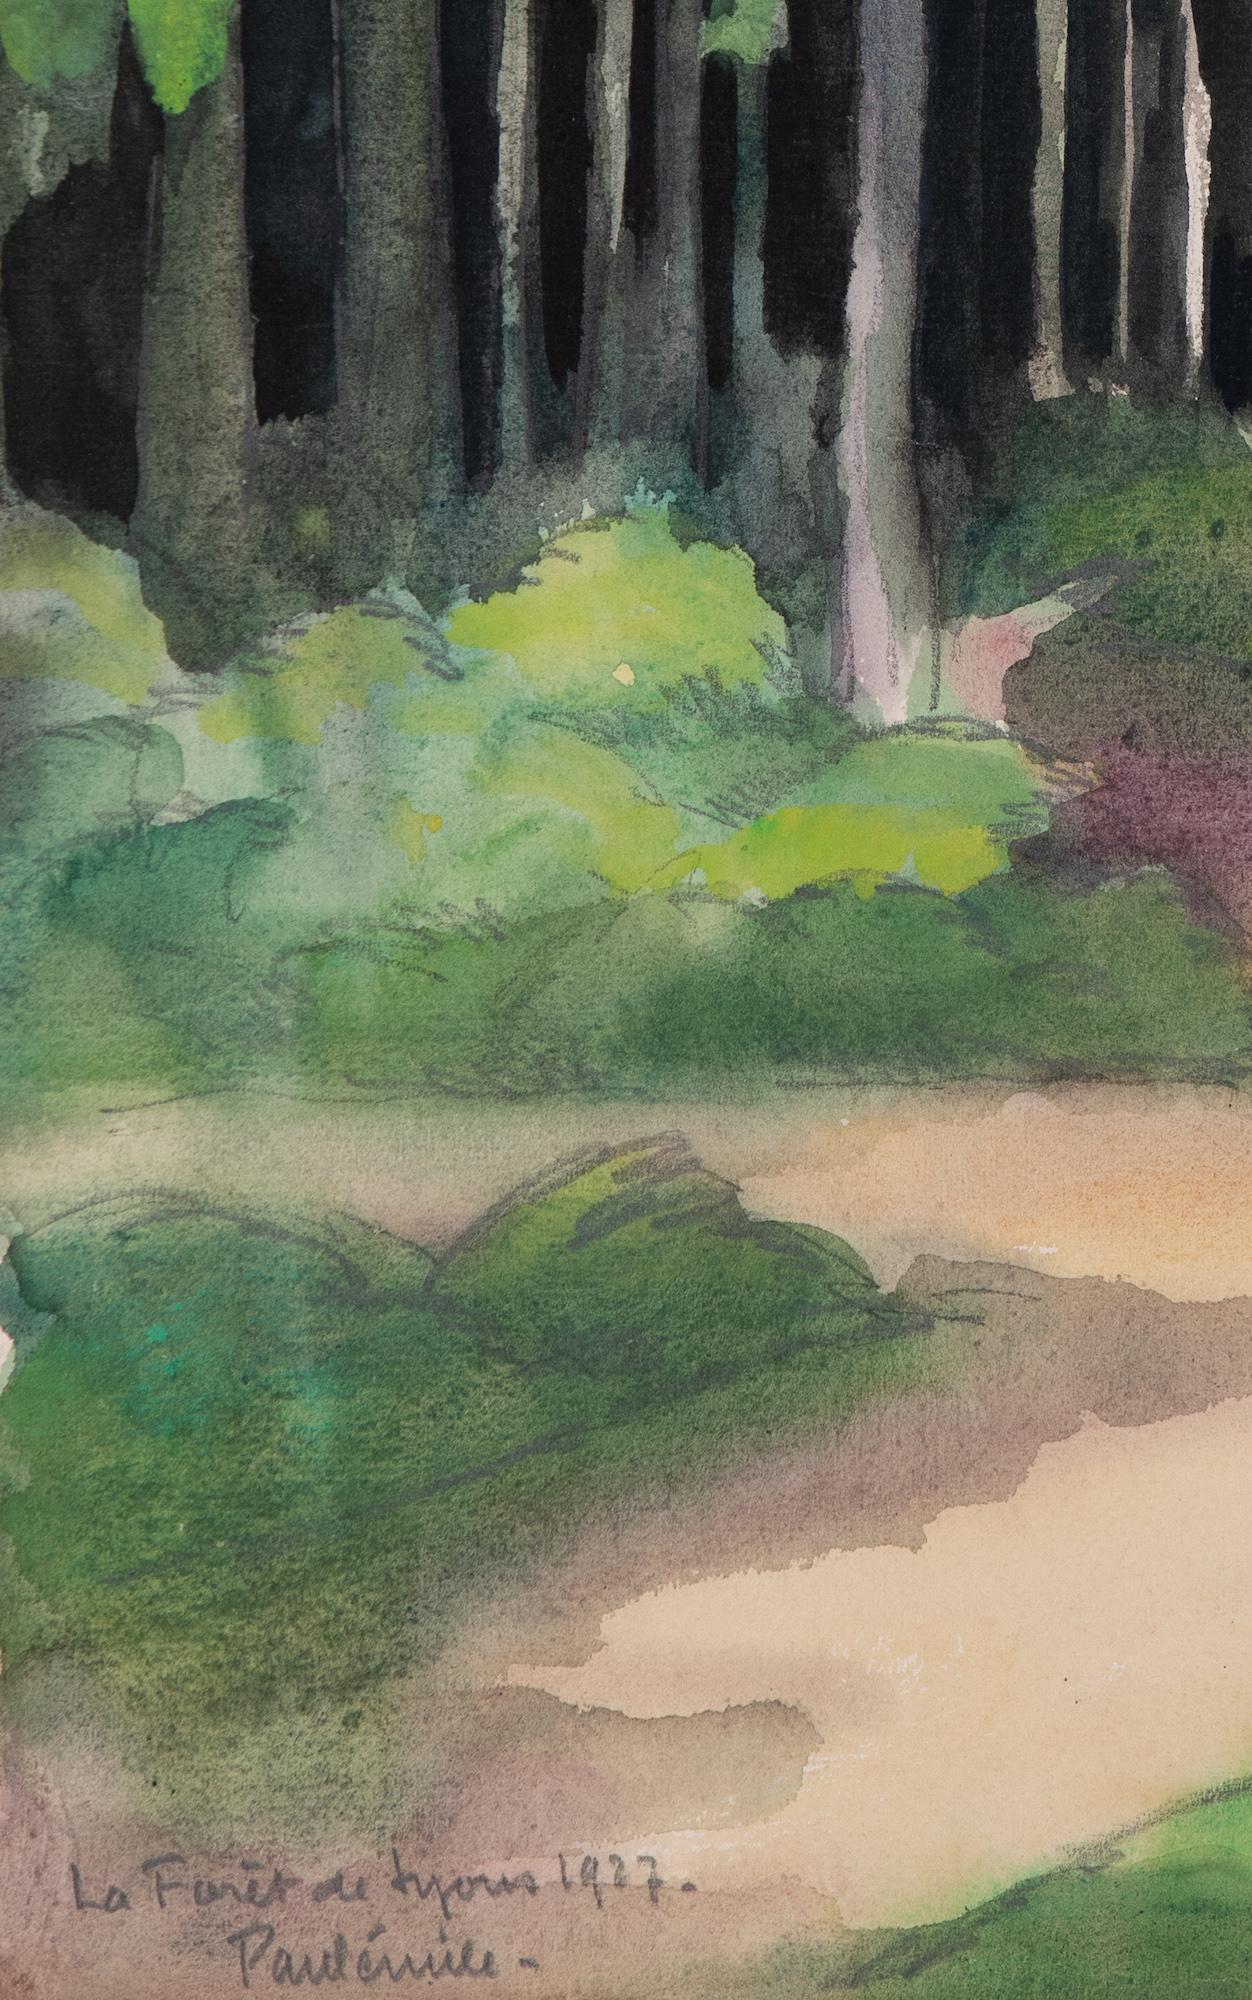 La Forêt de Lyons by Paulémile Pissarro - Watercolour landscape - Brown Landscape Art by Paul Emile Pissarro